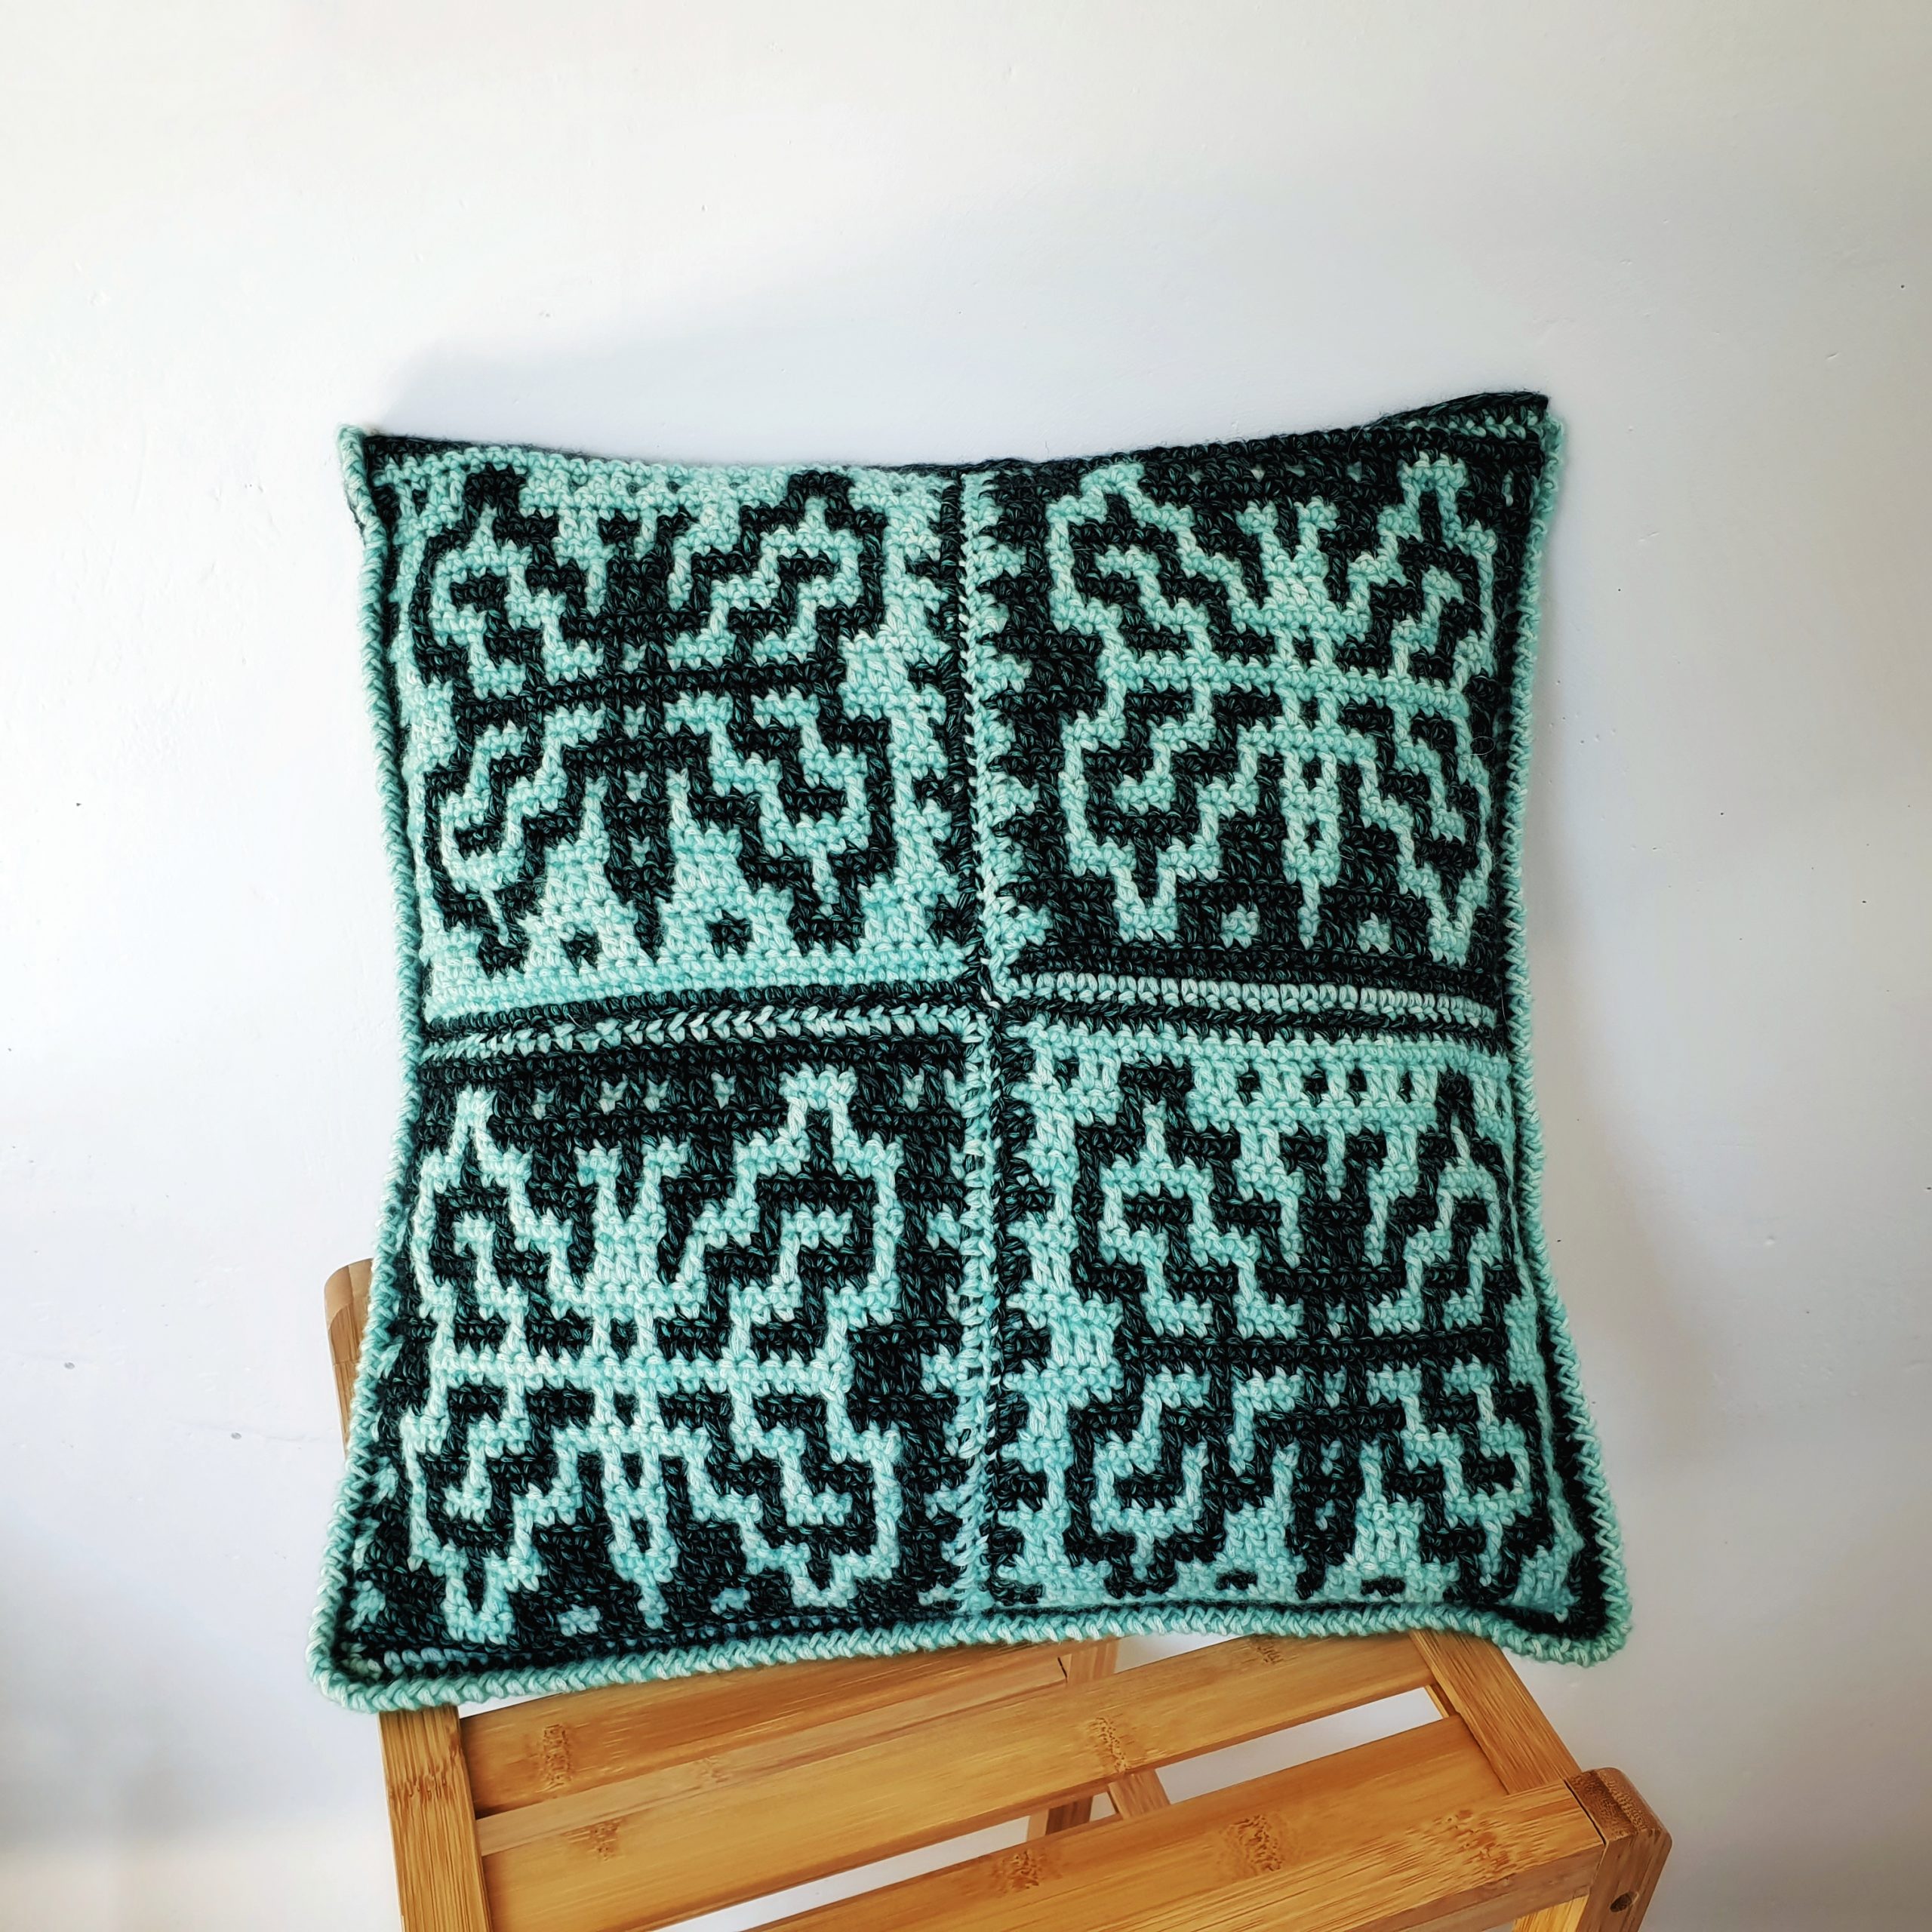 39 - Spike DC Mosaic Crochet  Crochet pillow patterns free